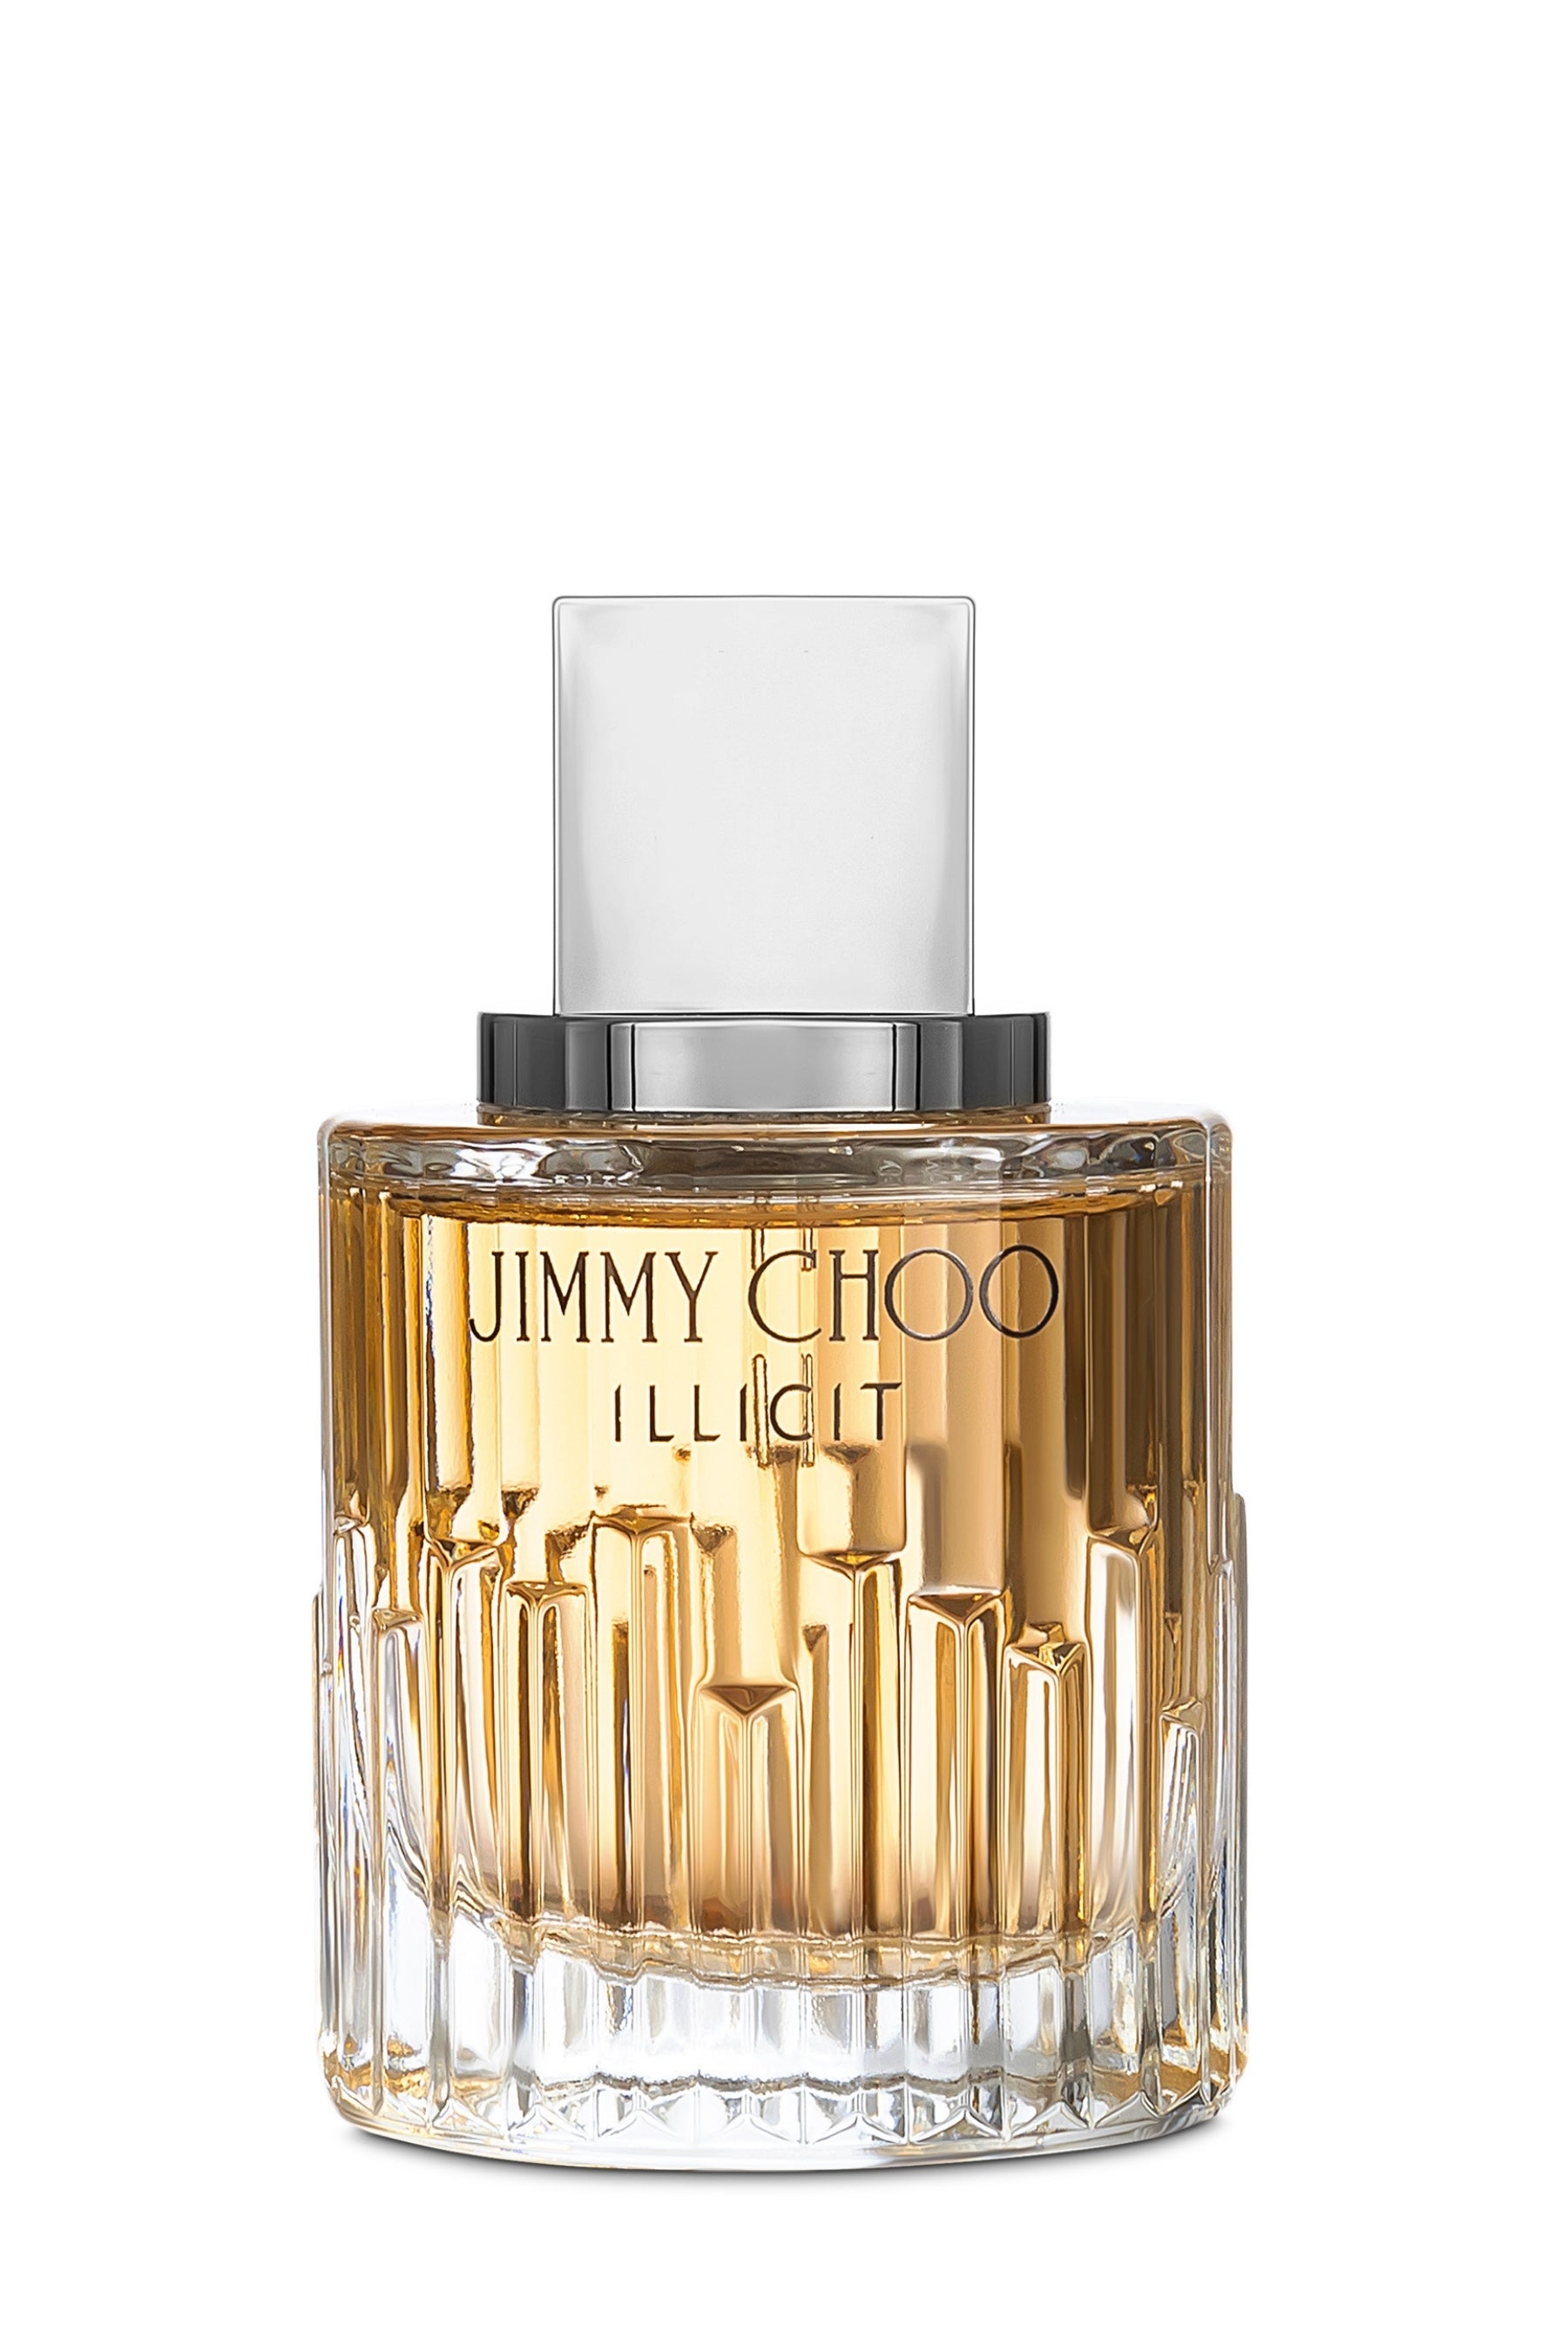 Jimmy Choo | Illicit Eau de Parfum